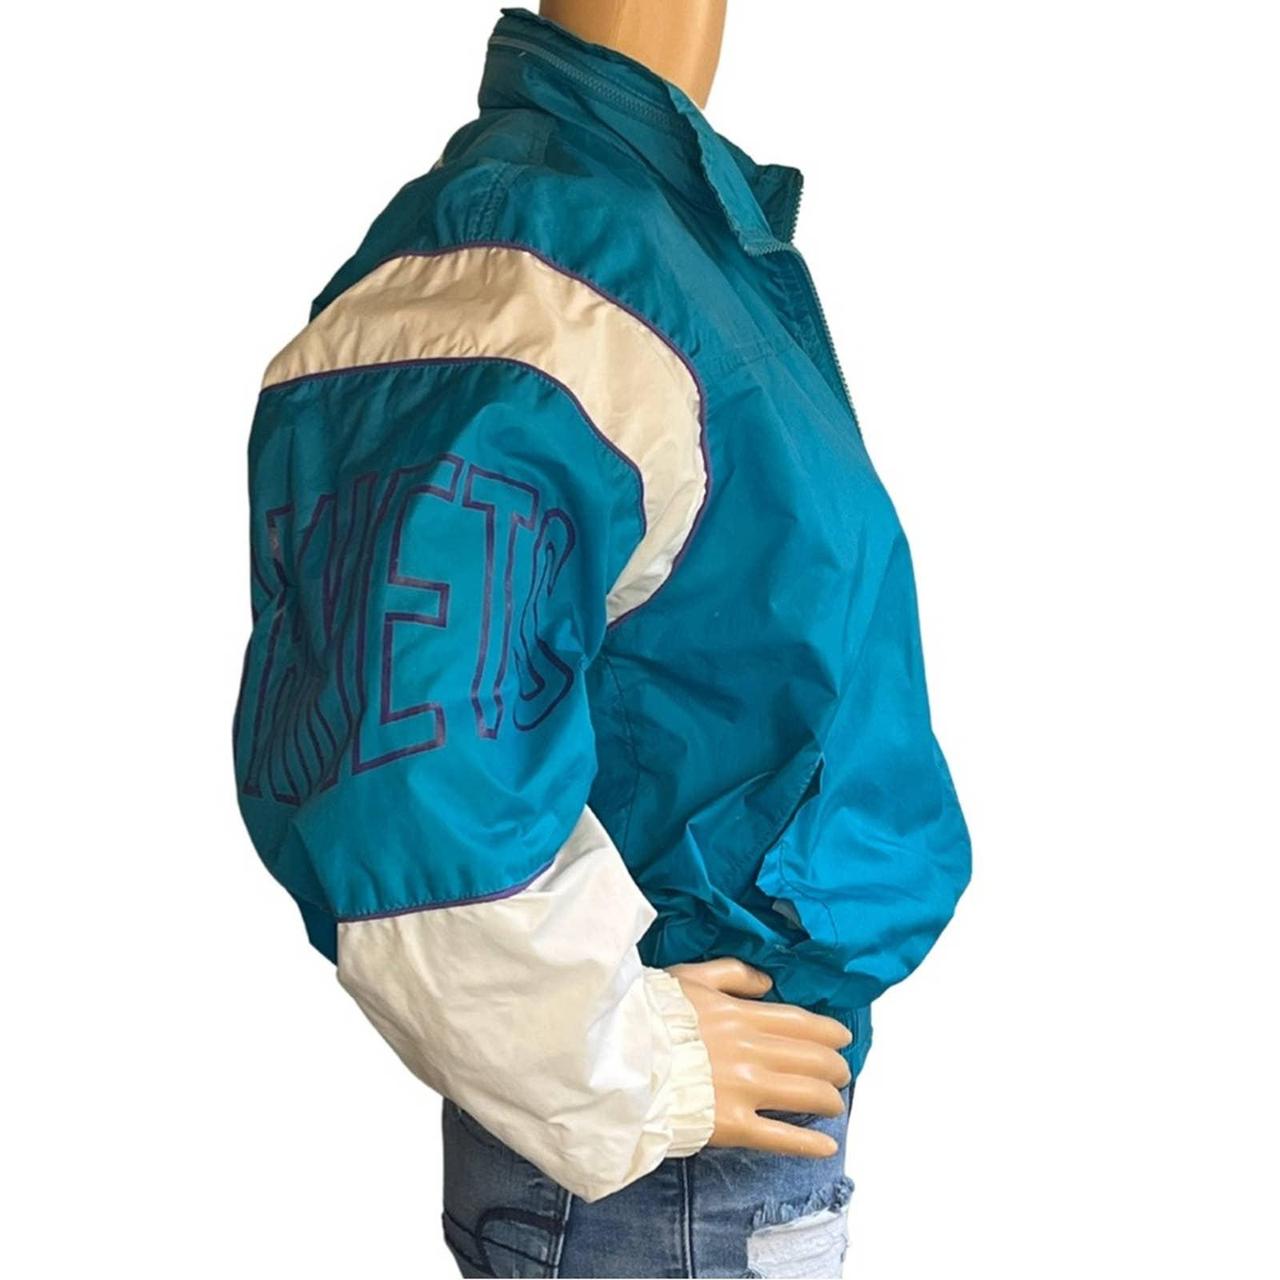 Charlotte Hornets Vintage 90's Teal Starter Pullover Jacket Center